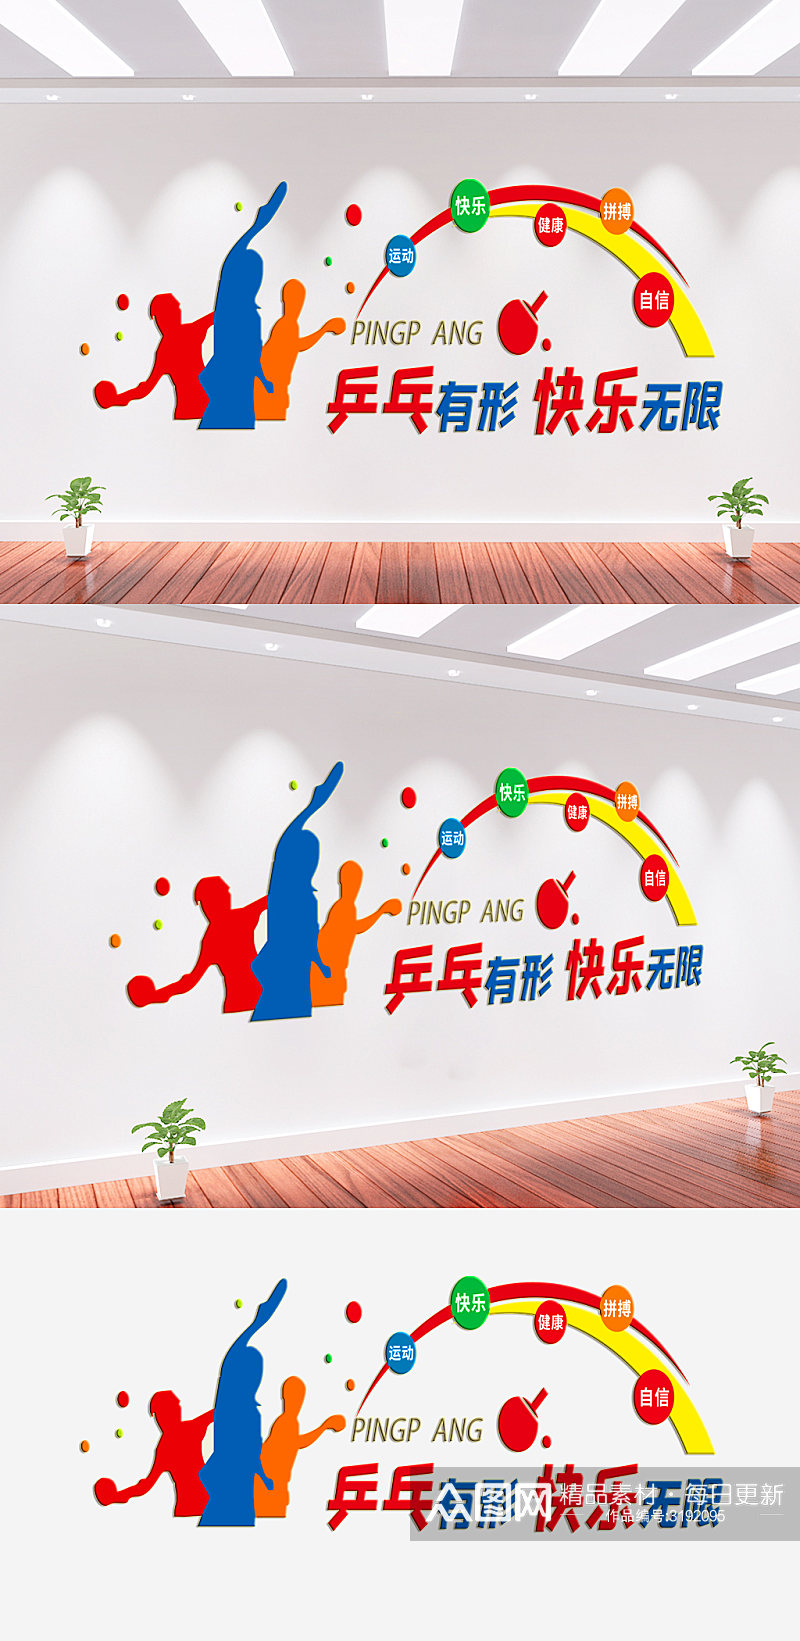 乒乓球体育运动文化墙素材